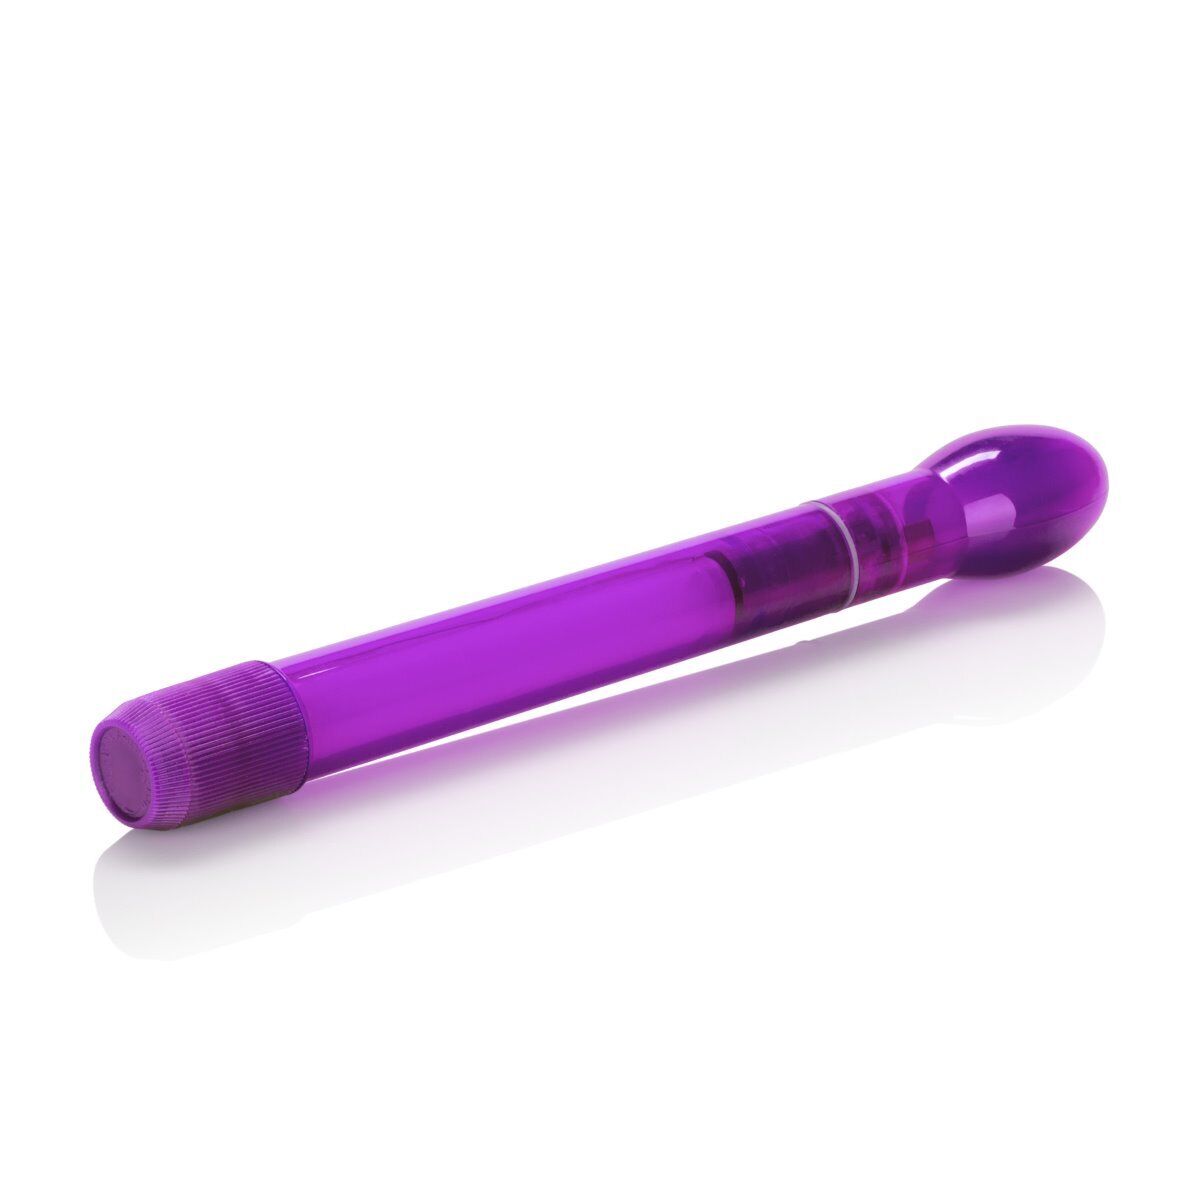 Slim Slender Tulip Clit Anal G-spot Vibe Vibrator Beginner Sex-toys for Women